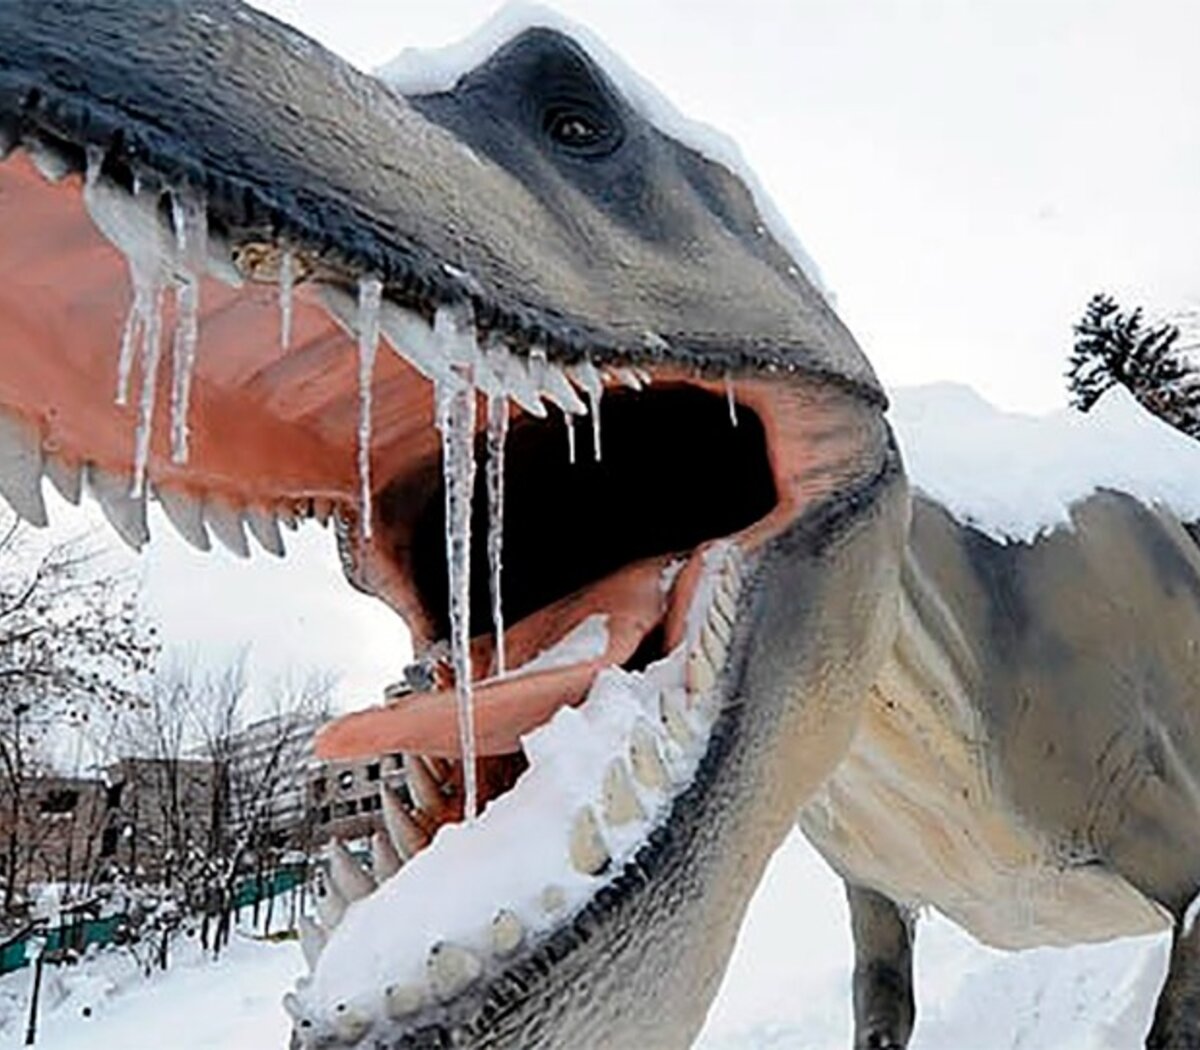 El frío pudo haber sido clave en la extinción de los dinosaurios | Un  estudio publicado este martes afirma que las bajas temperaturas fueron  decisivas antes del meteorito | Página12